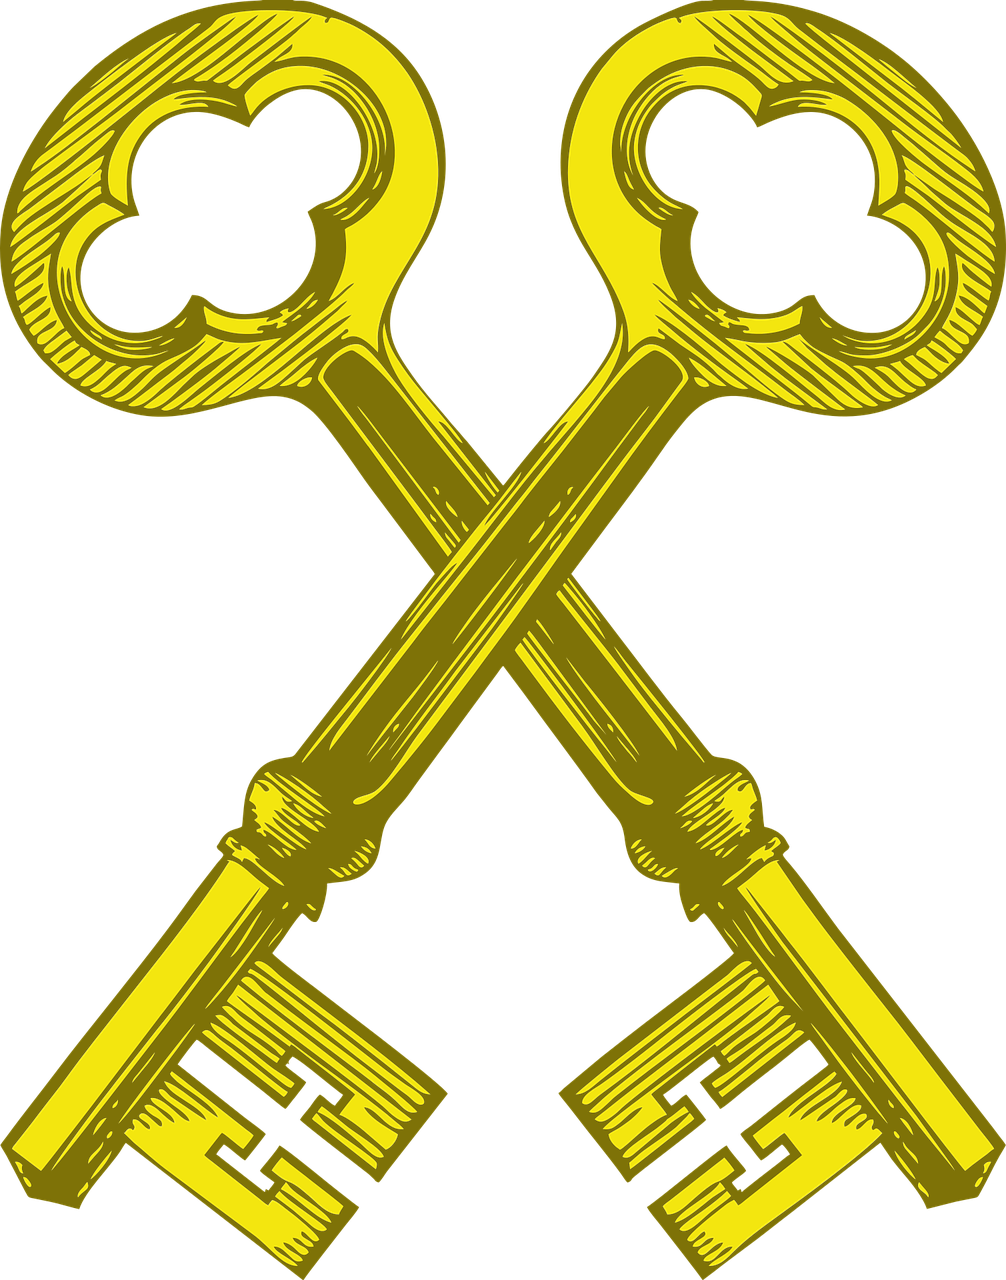 Keys Vintage Key Lock - Skeleton Key Clip Art - Png Download (1006x1280), Png Download